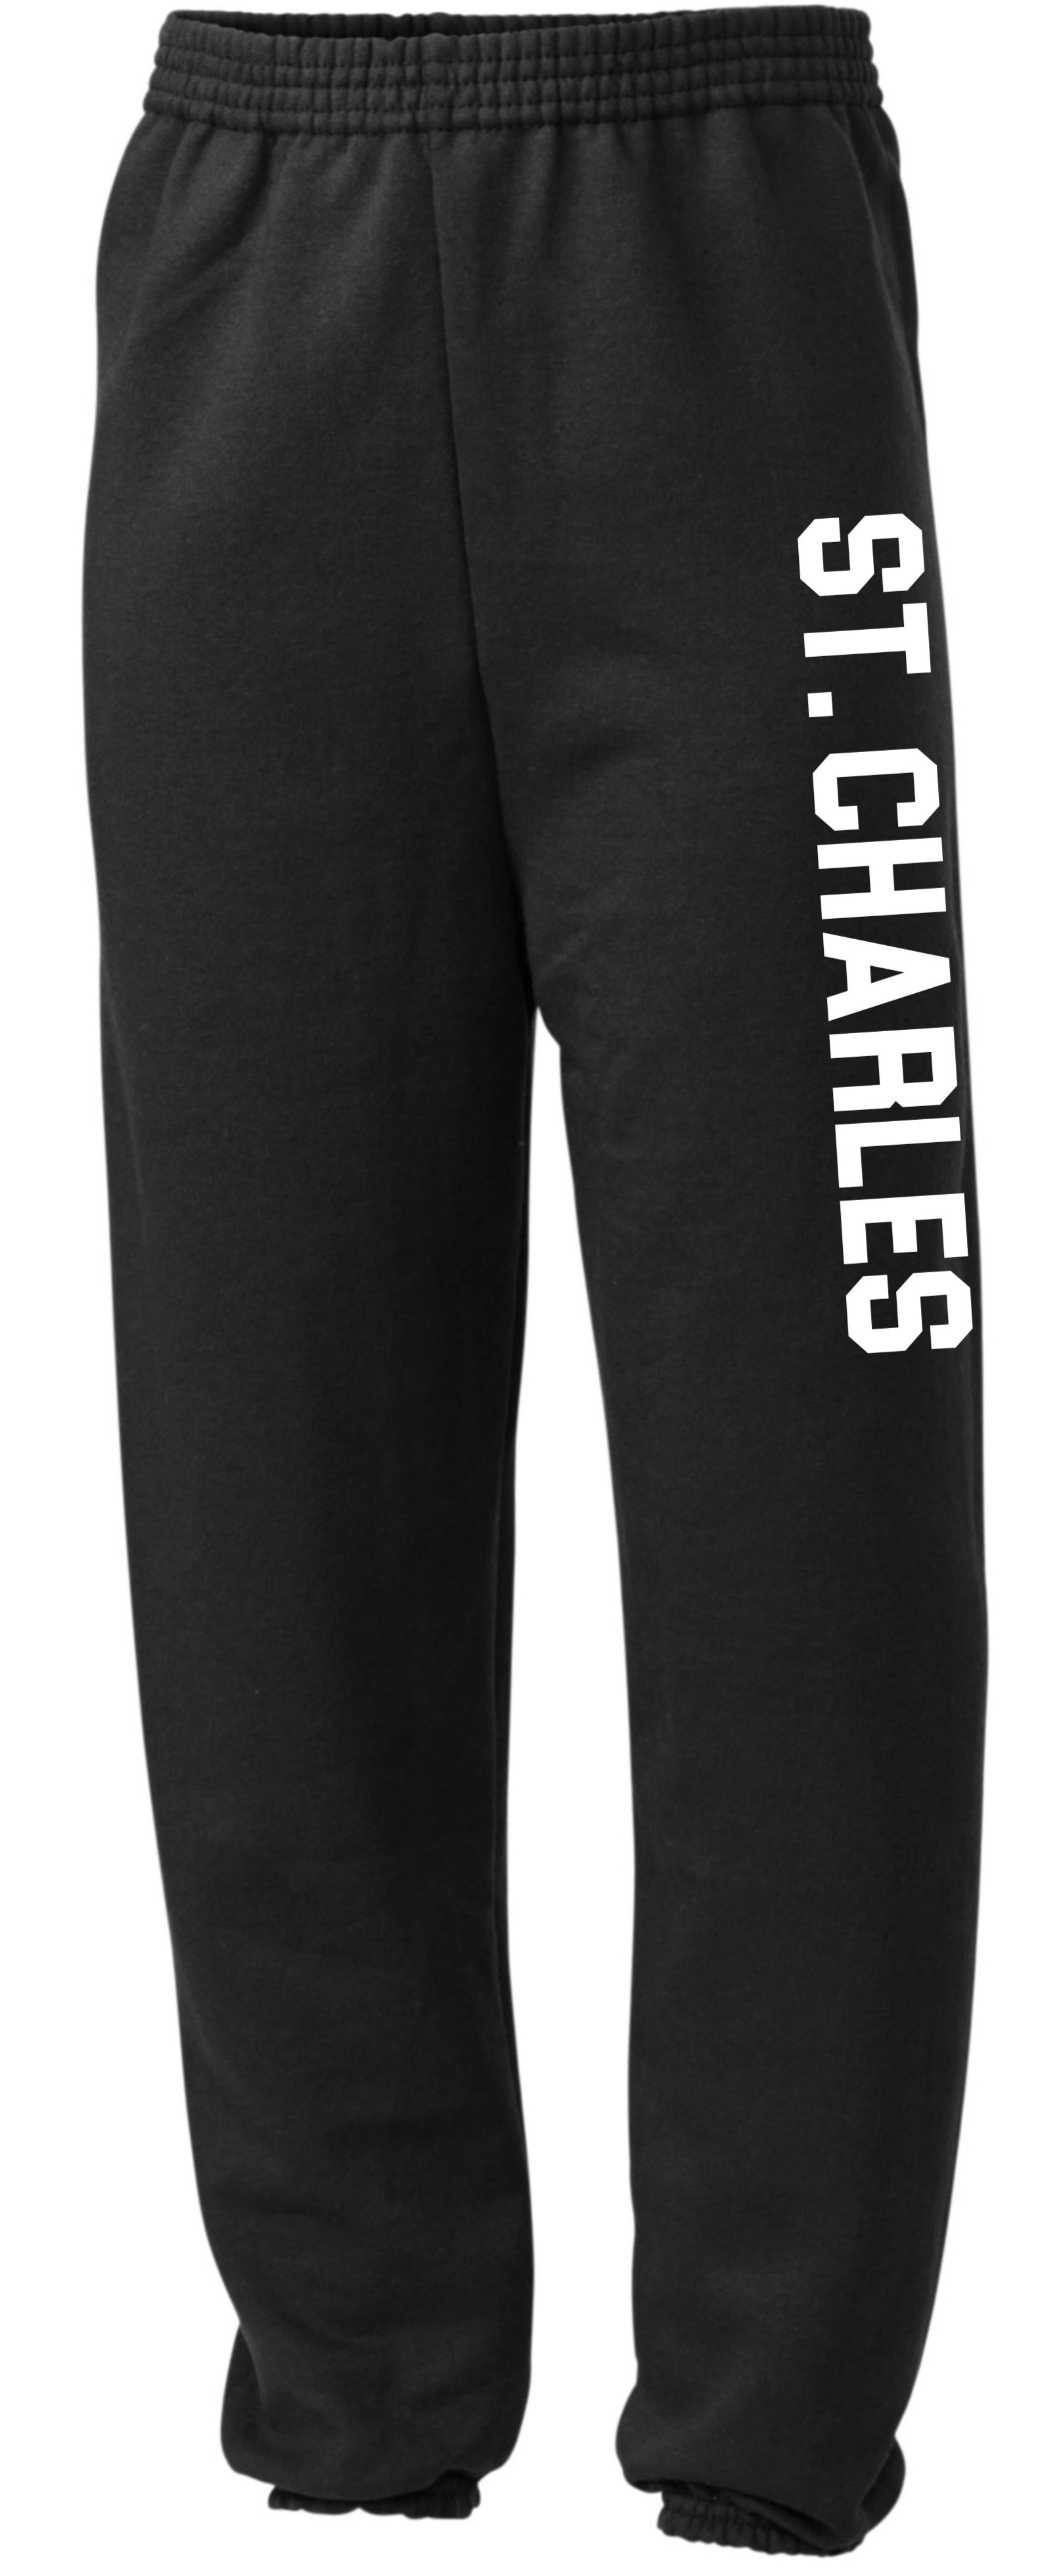 St Charles Adult Sweatpants